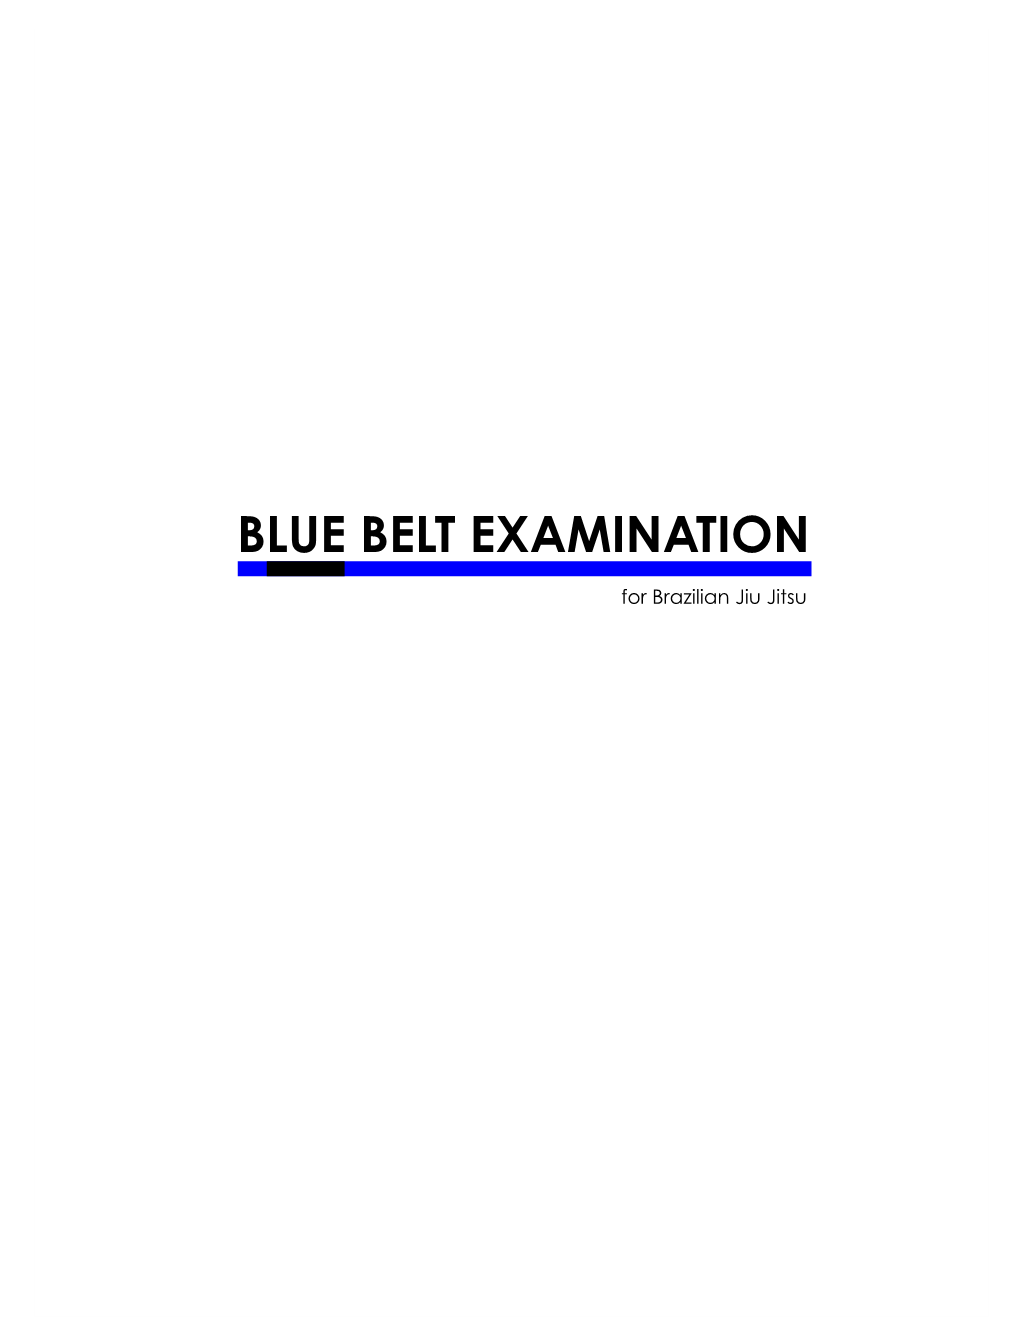 Blue Belt Requirements